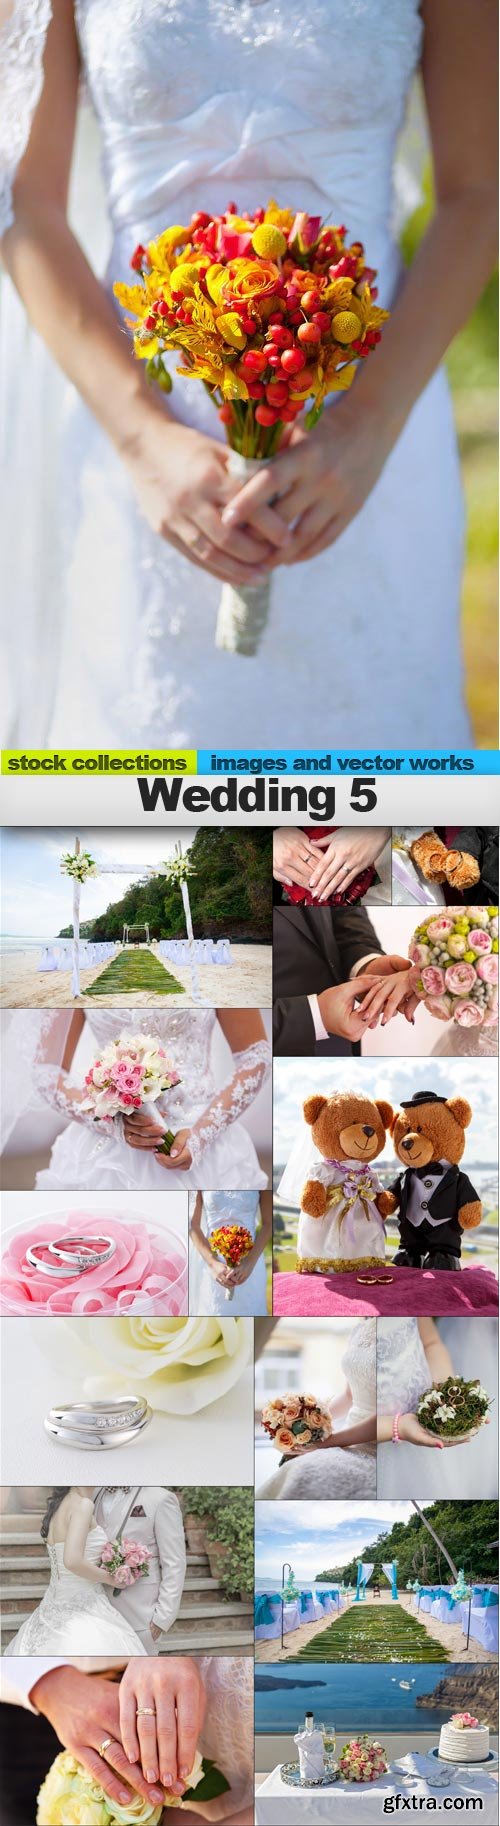 Wedding 5, 15 x UHQ JPEG